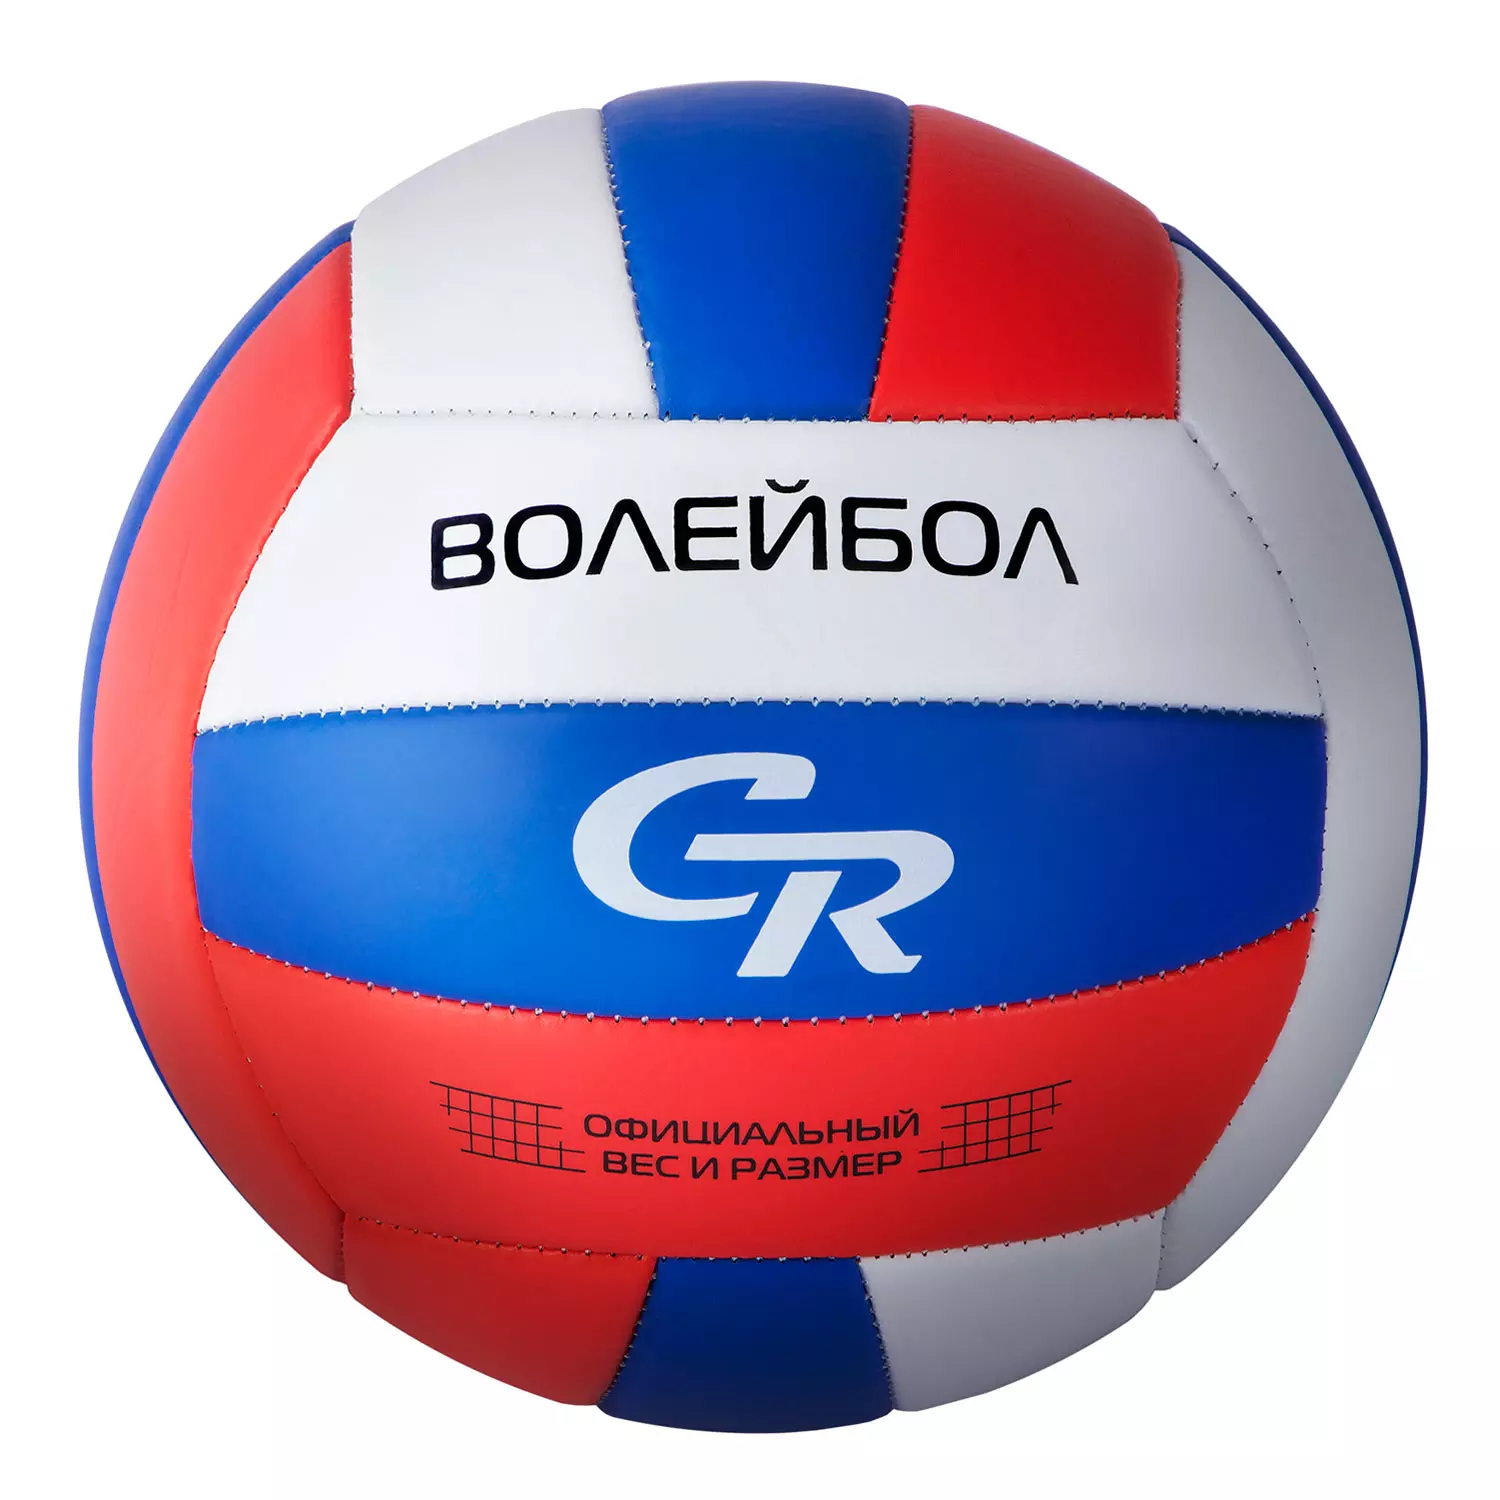 Мяч волейбольный CR, ПВХ, машинная сшивка панелей, 280г в/п